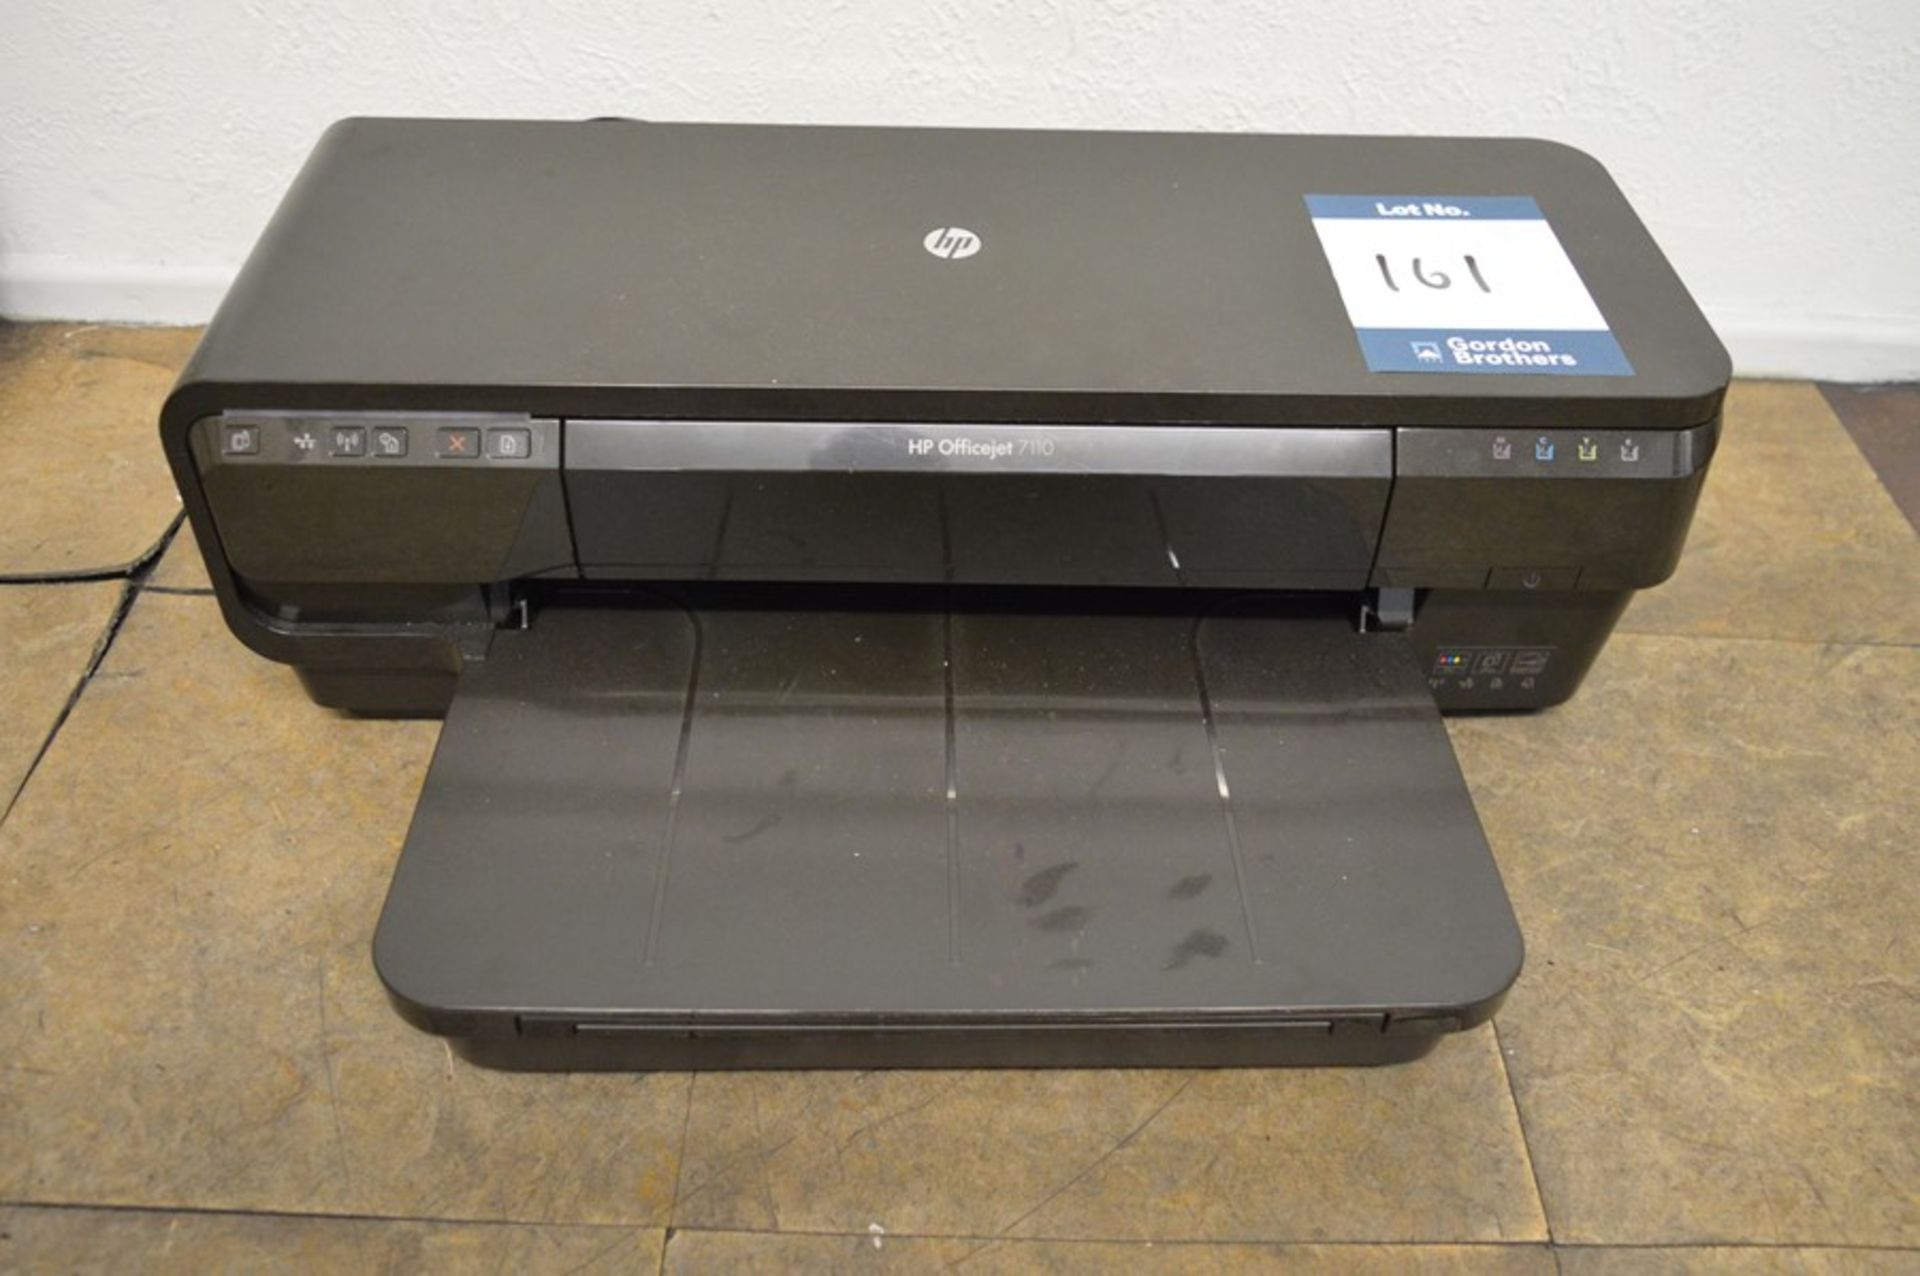 Hewlett Packard, Officejet 7110, colour printer